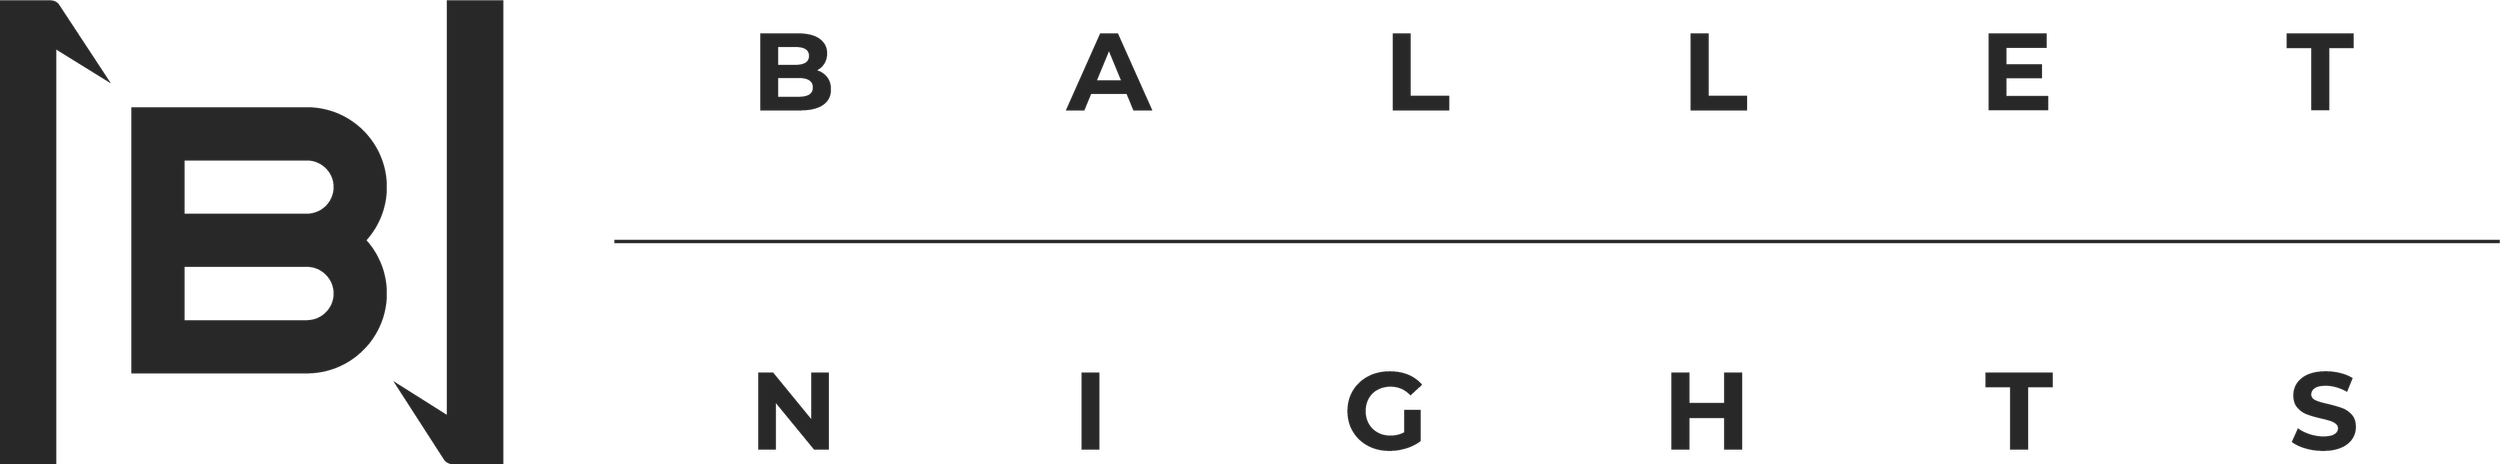 logo - rectangular dark black.png